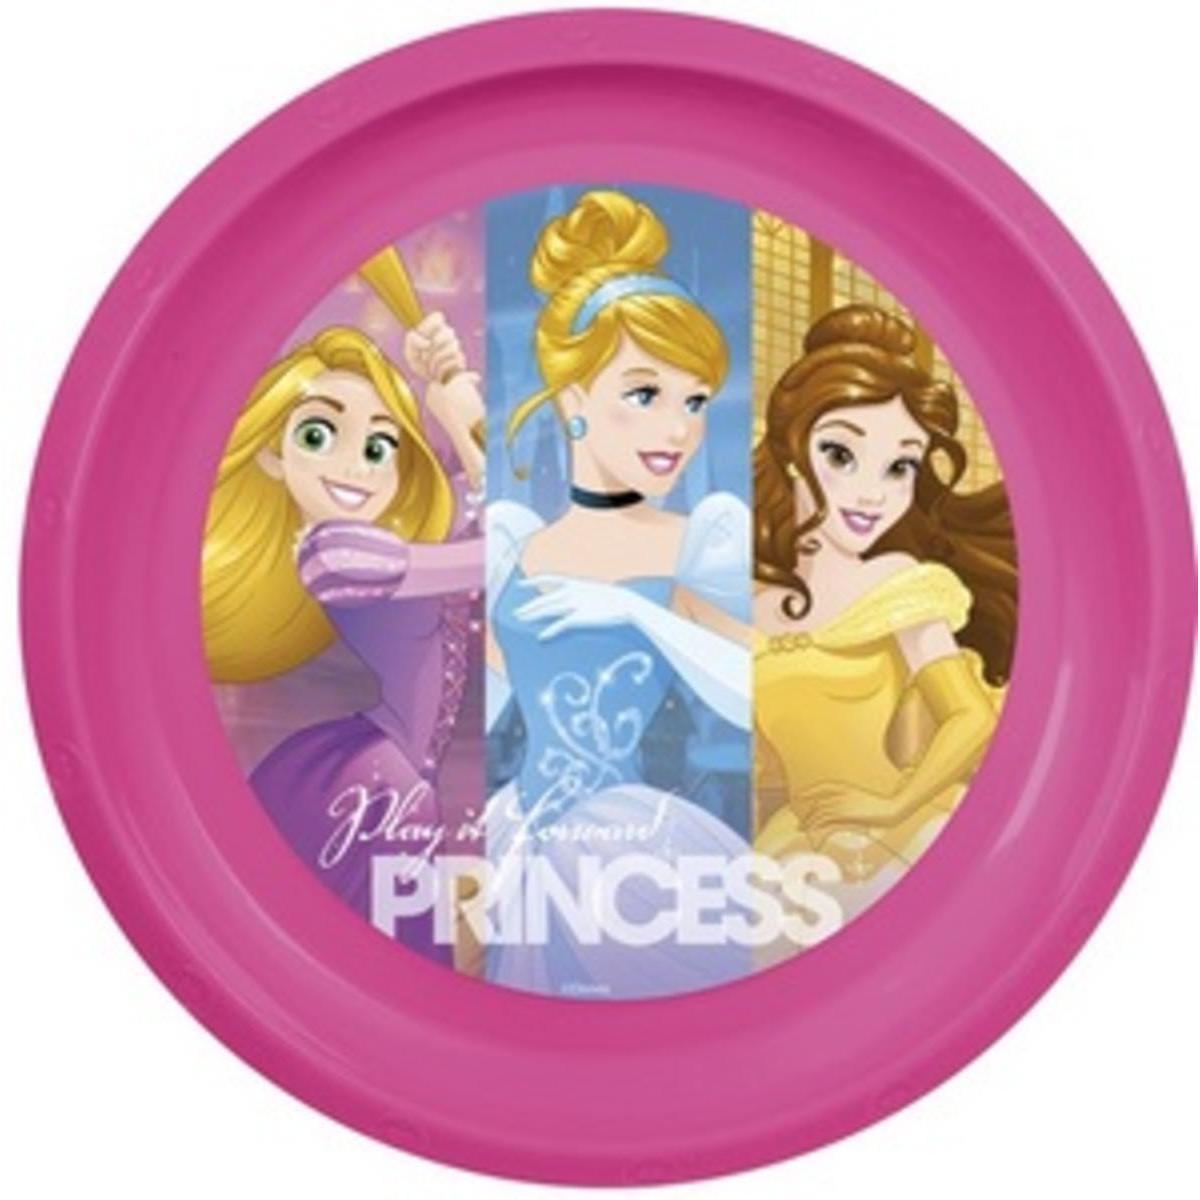 Princess assiette 21 cm plastique x 1 pièce ø 3